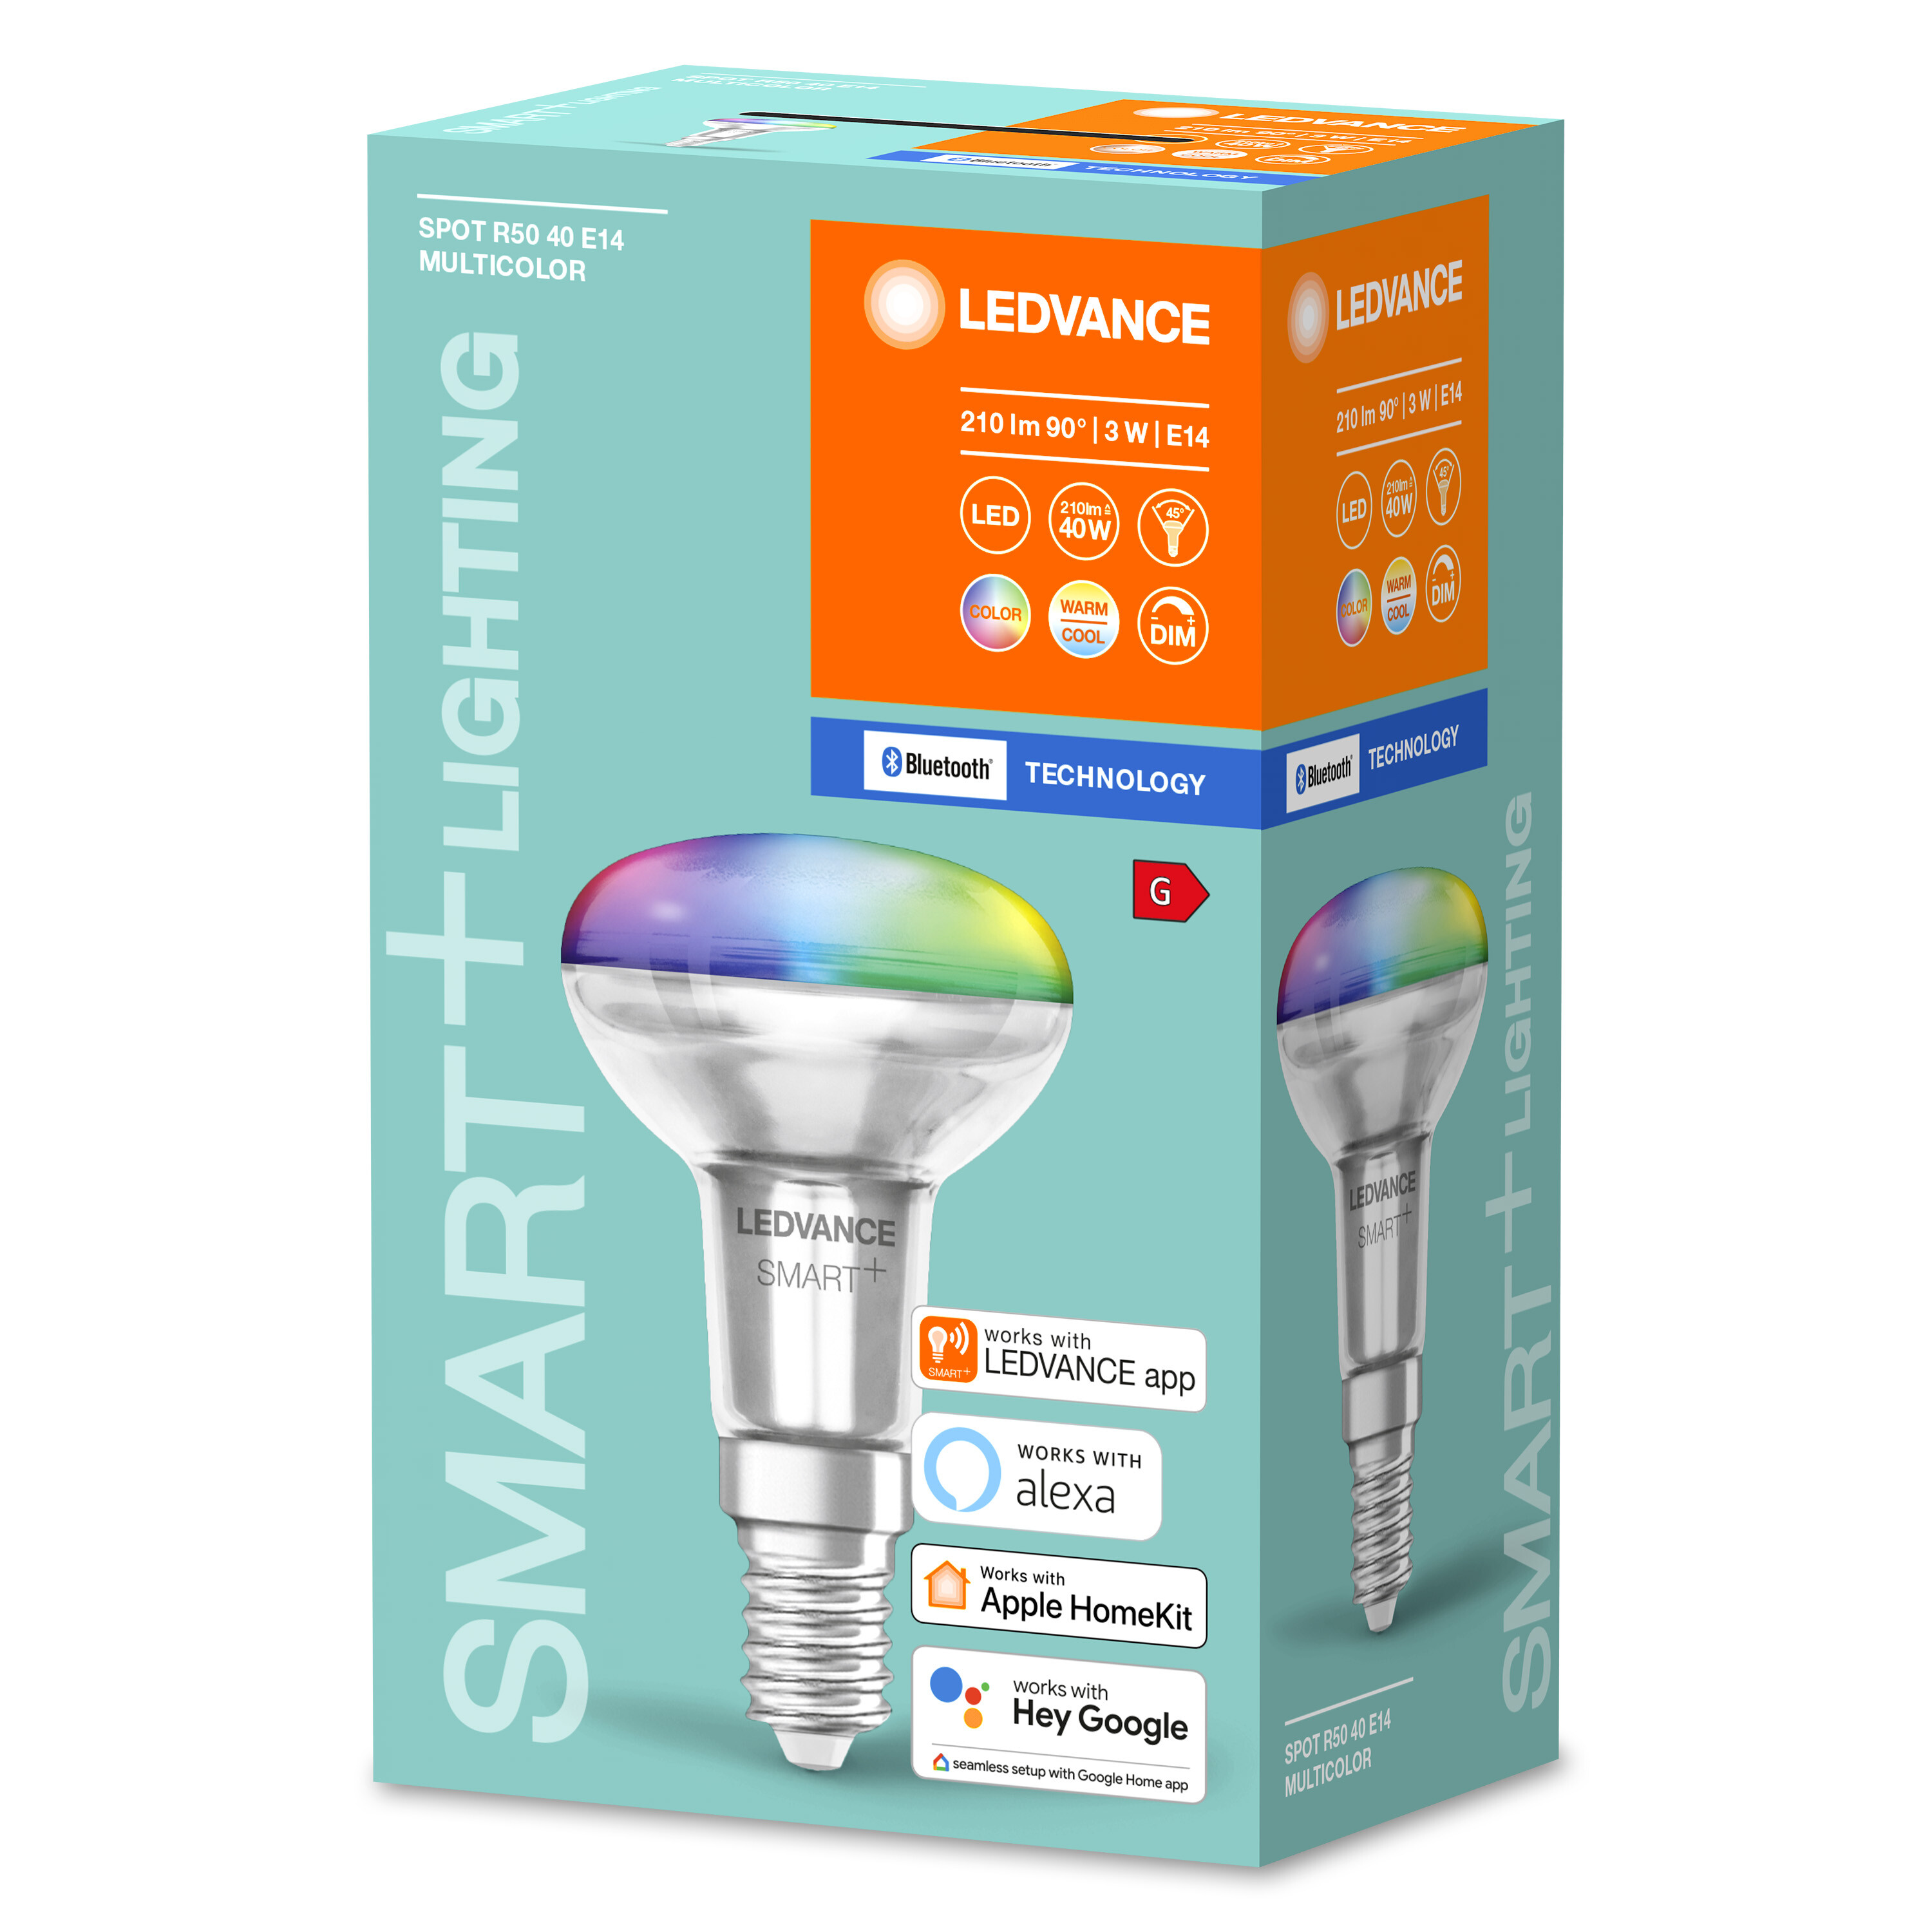 LEDVANCE SMART+ BT SPOT R50 Multicolor E14 3W Lampe LED Lichtfarbe änderbar CONCENTRA 40 Multicolor